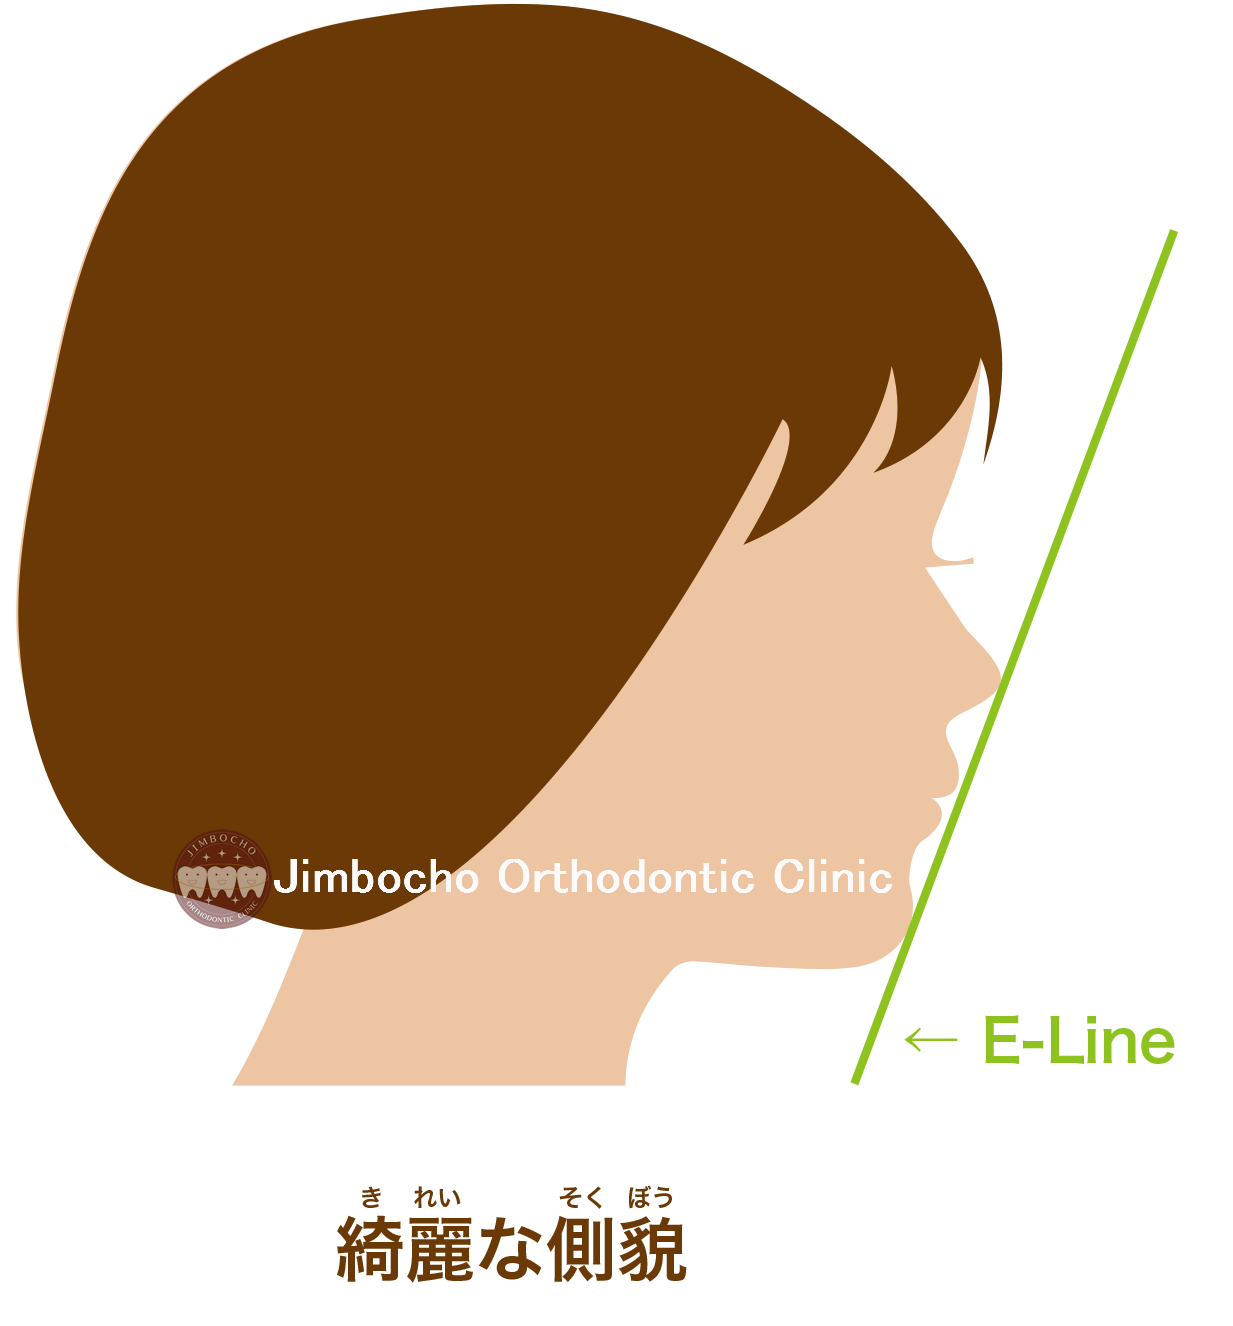 (イラスト) E-lineイーライン2ロゴ